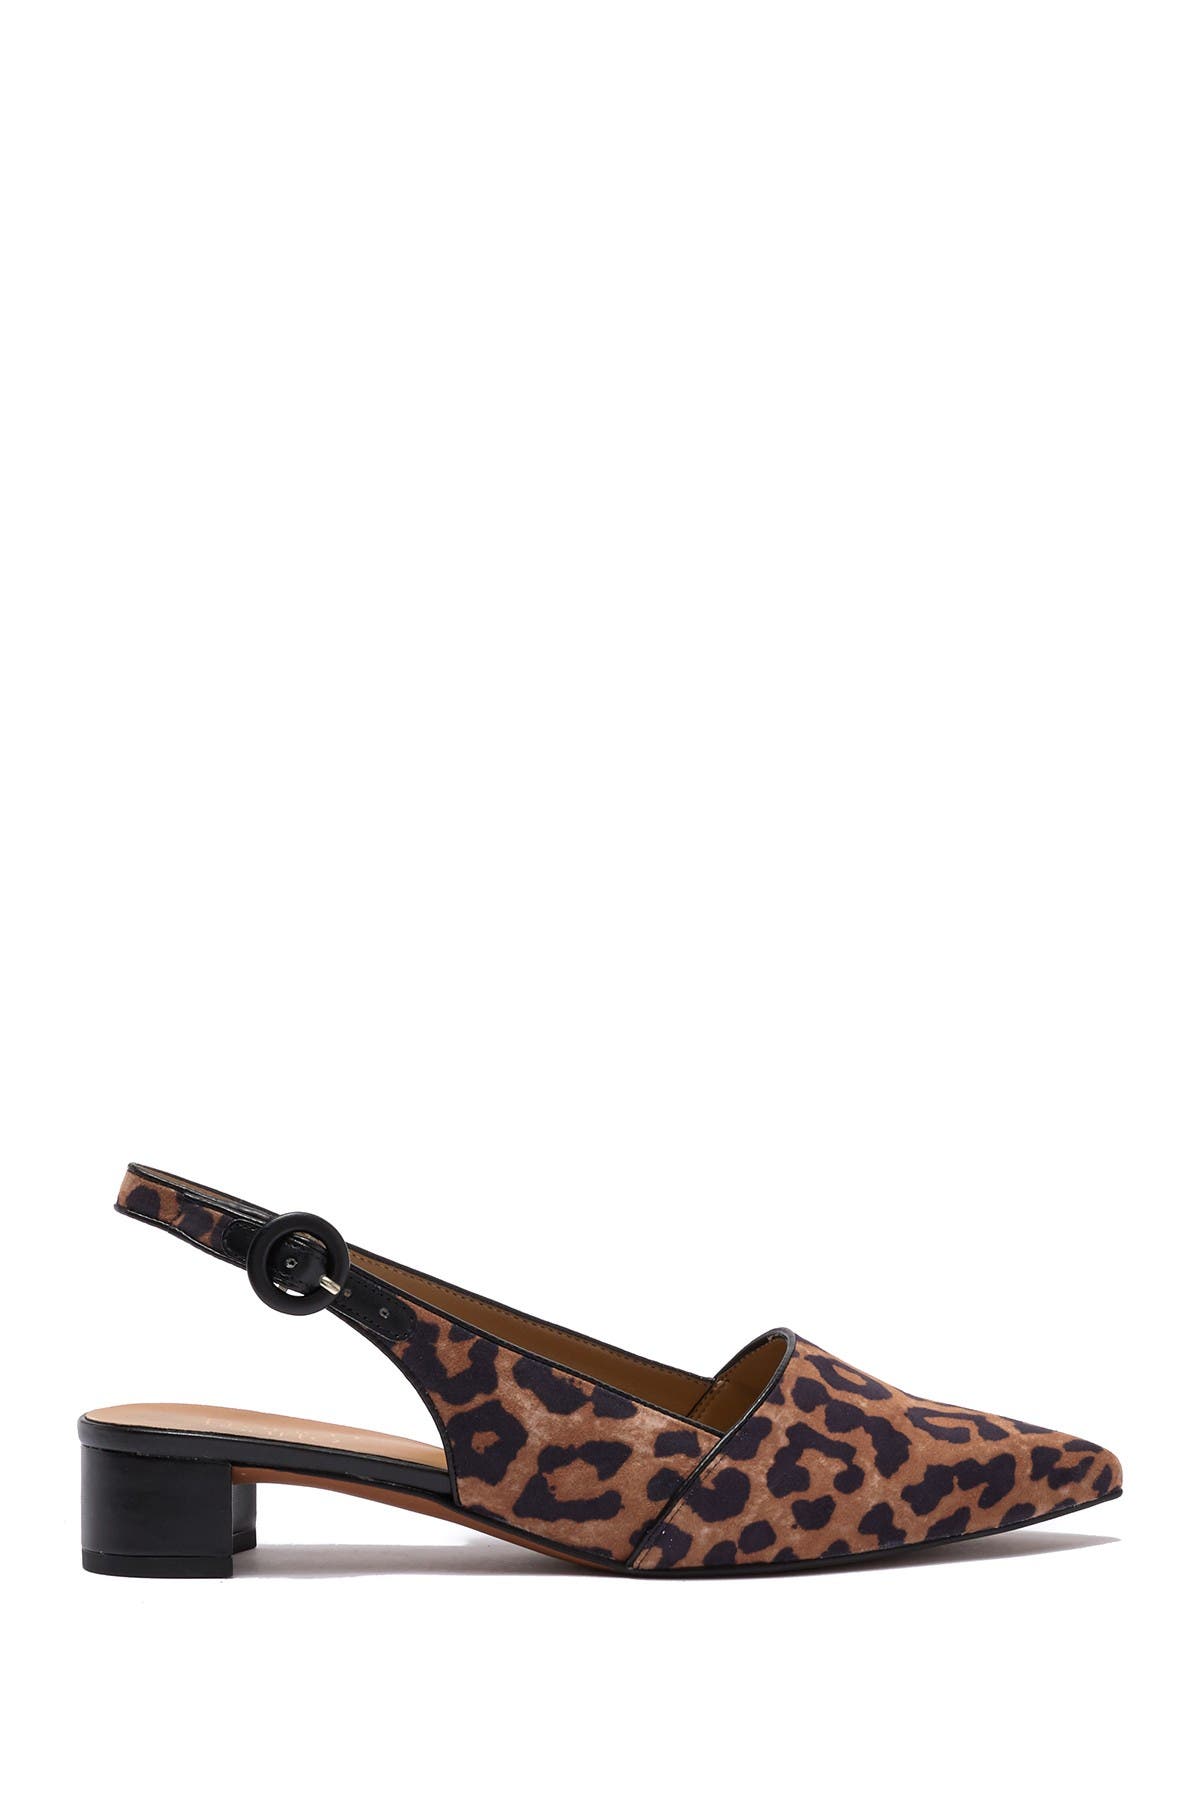 franco sarto leopard print heels